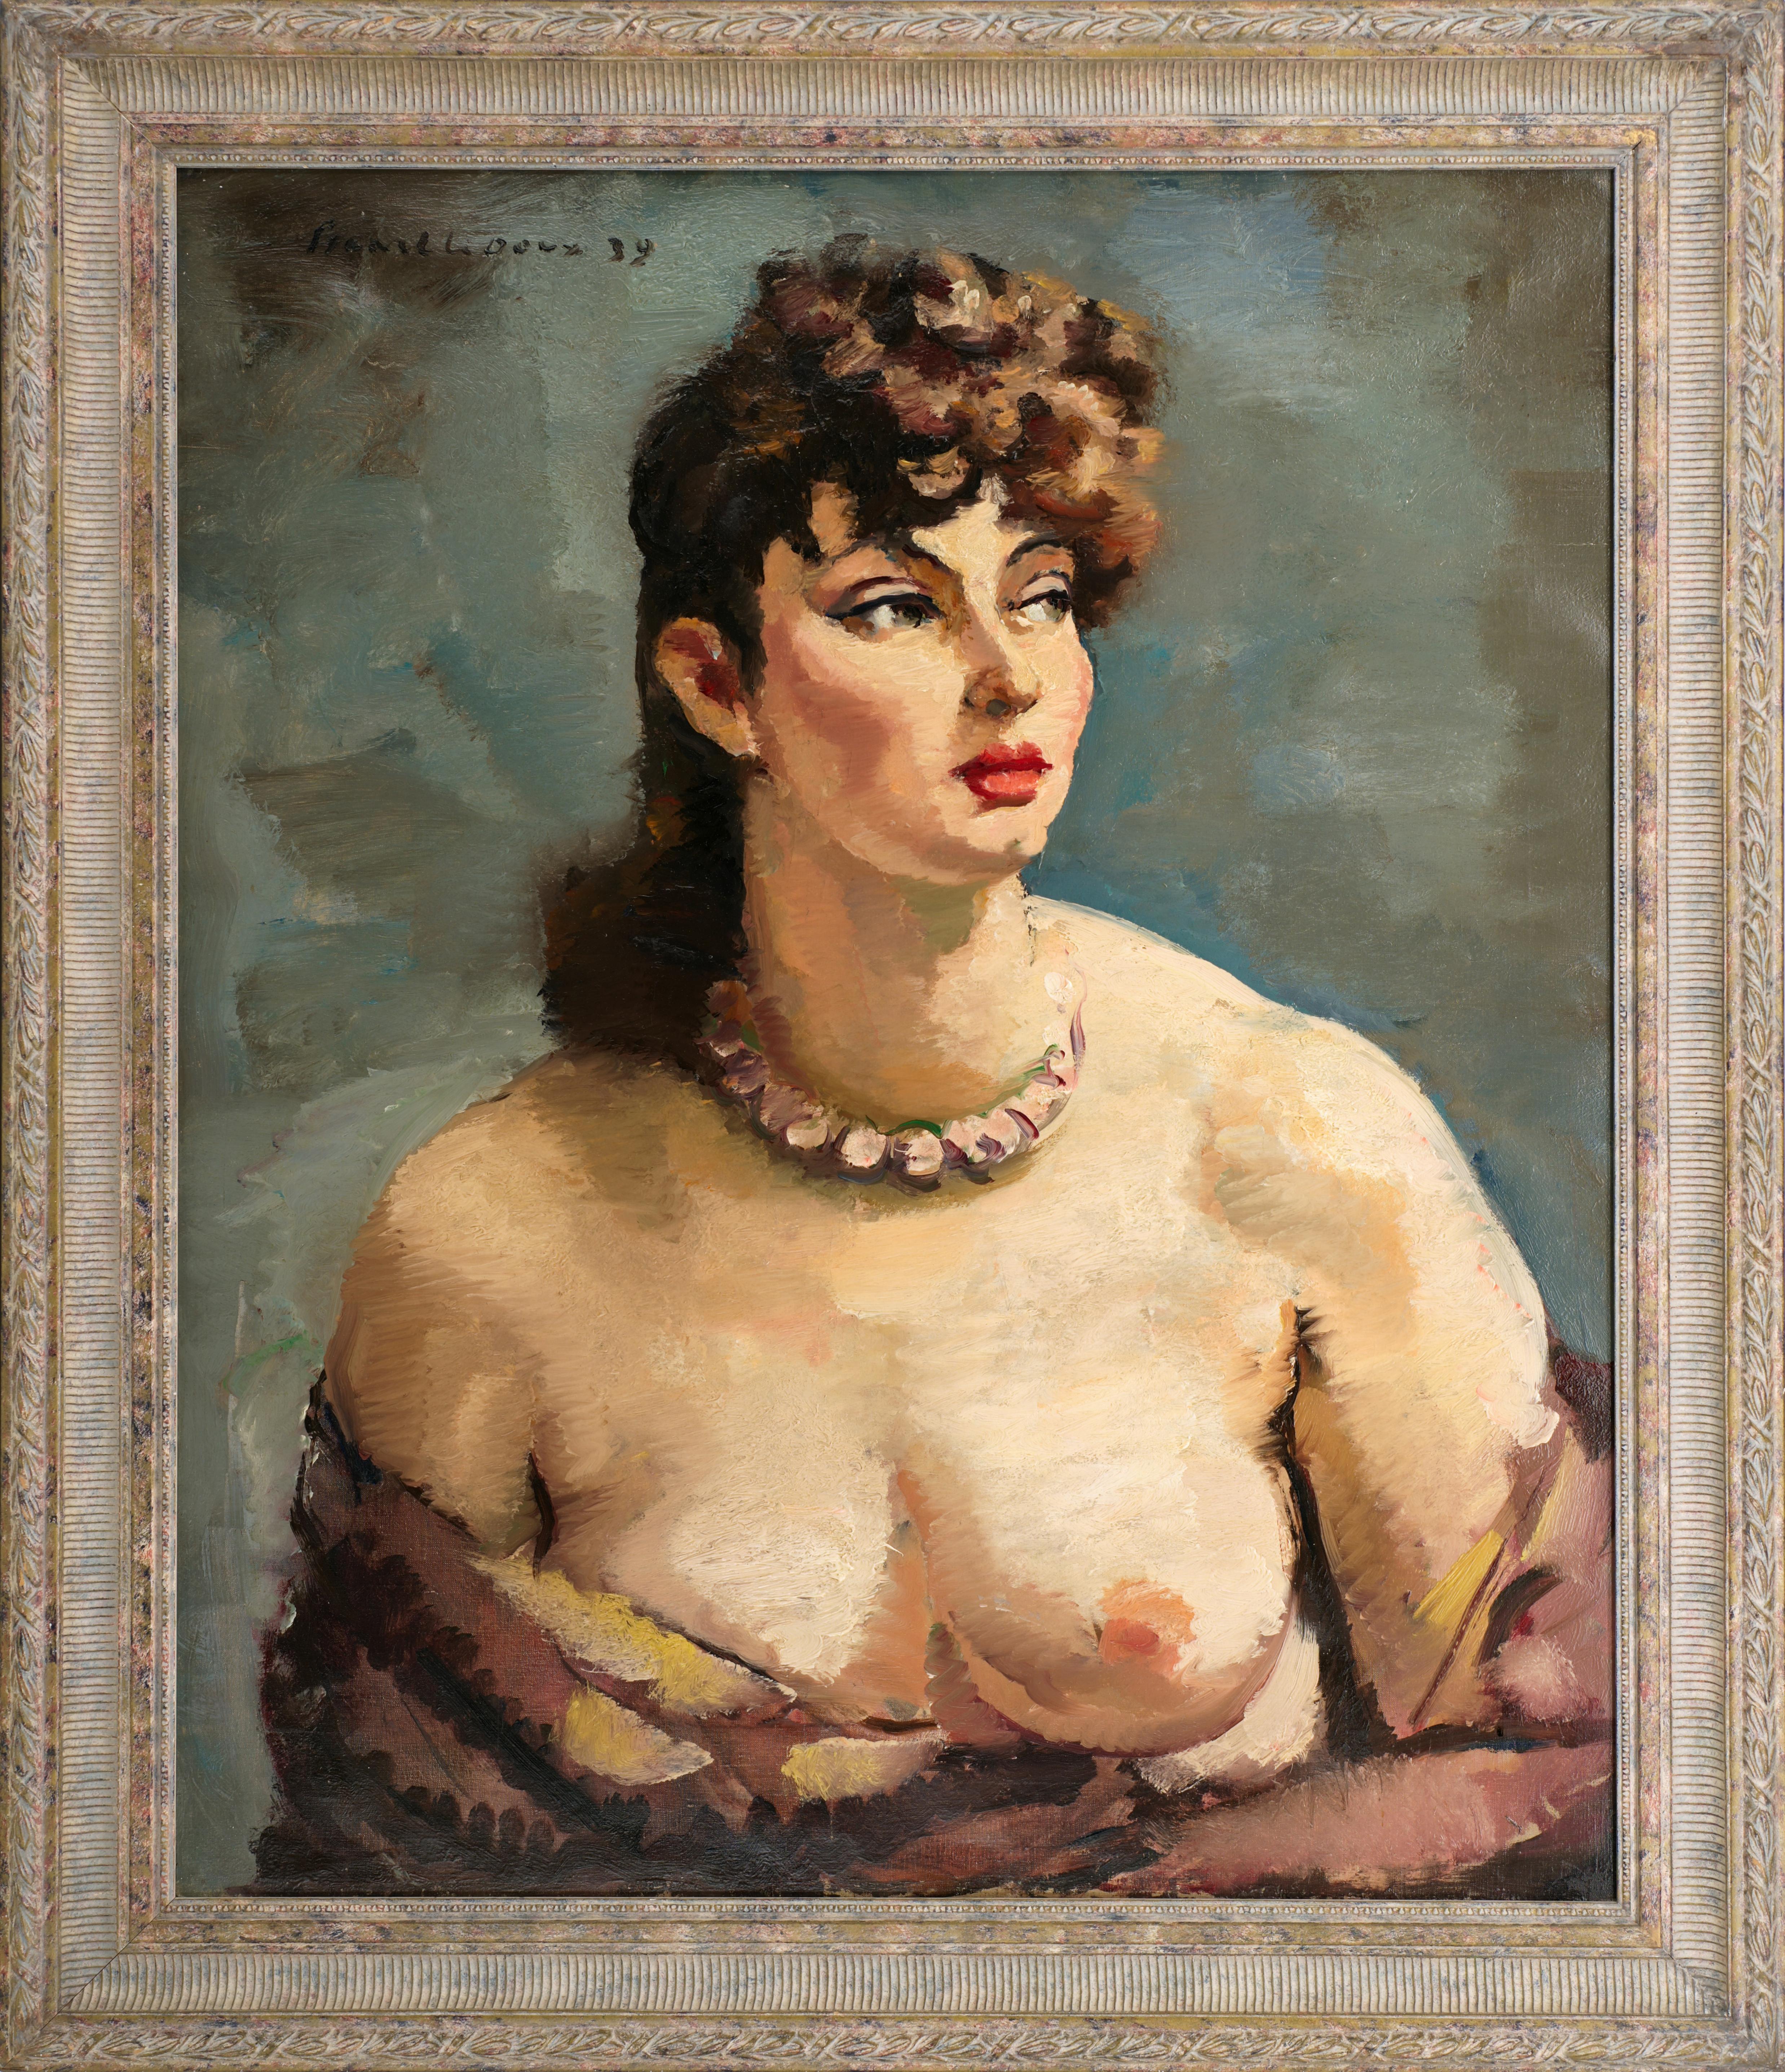 Charles Picart le Doux Portrait Painting – Charles PICART LE DOUX, Das schöne Mädchen, Öl auf Leinwand, 1939